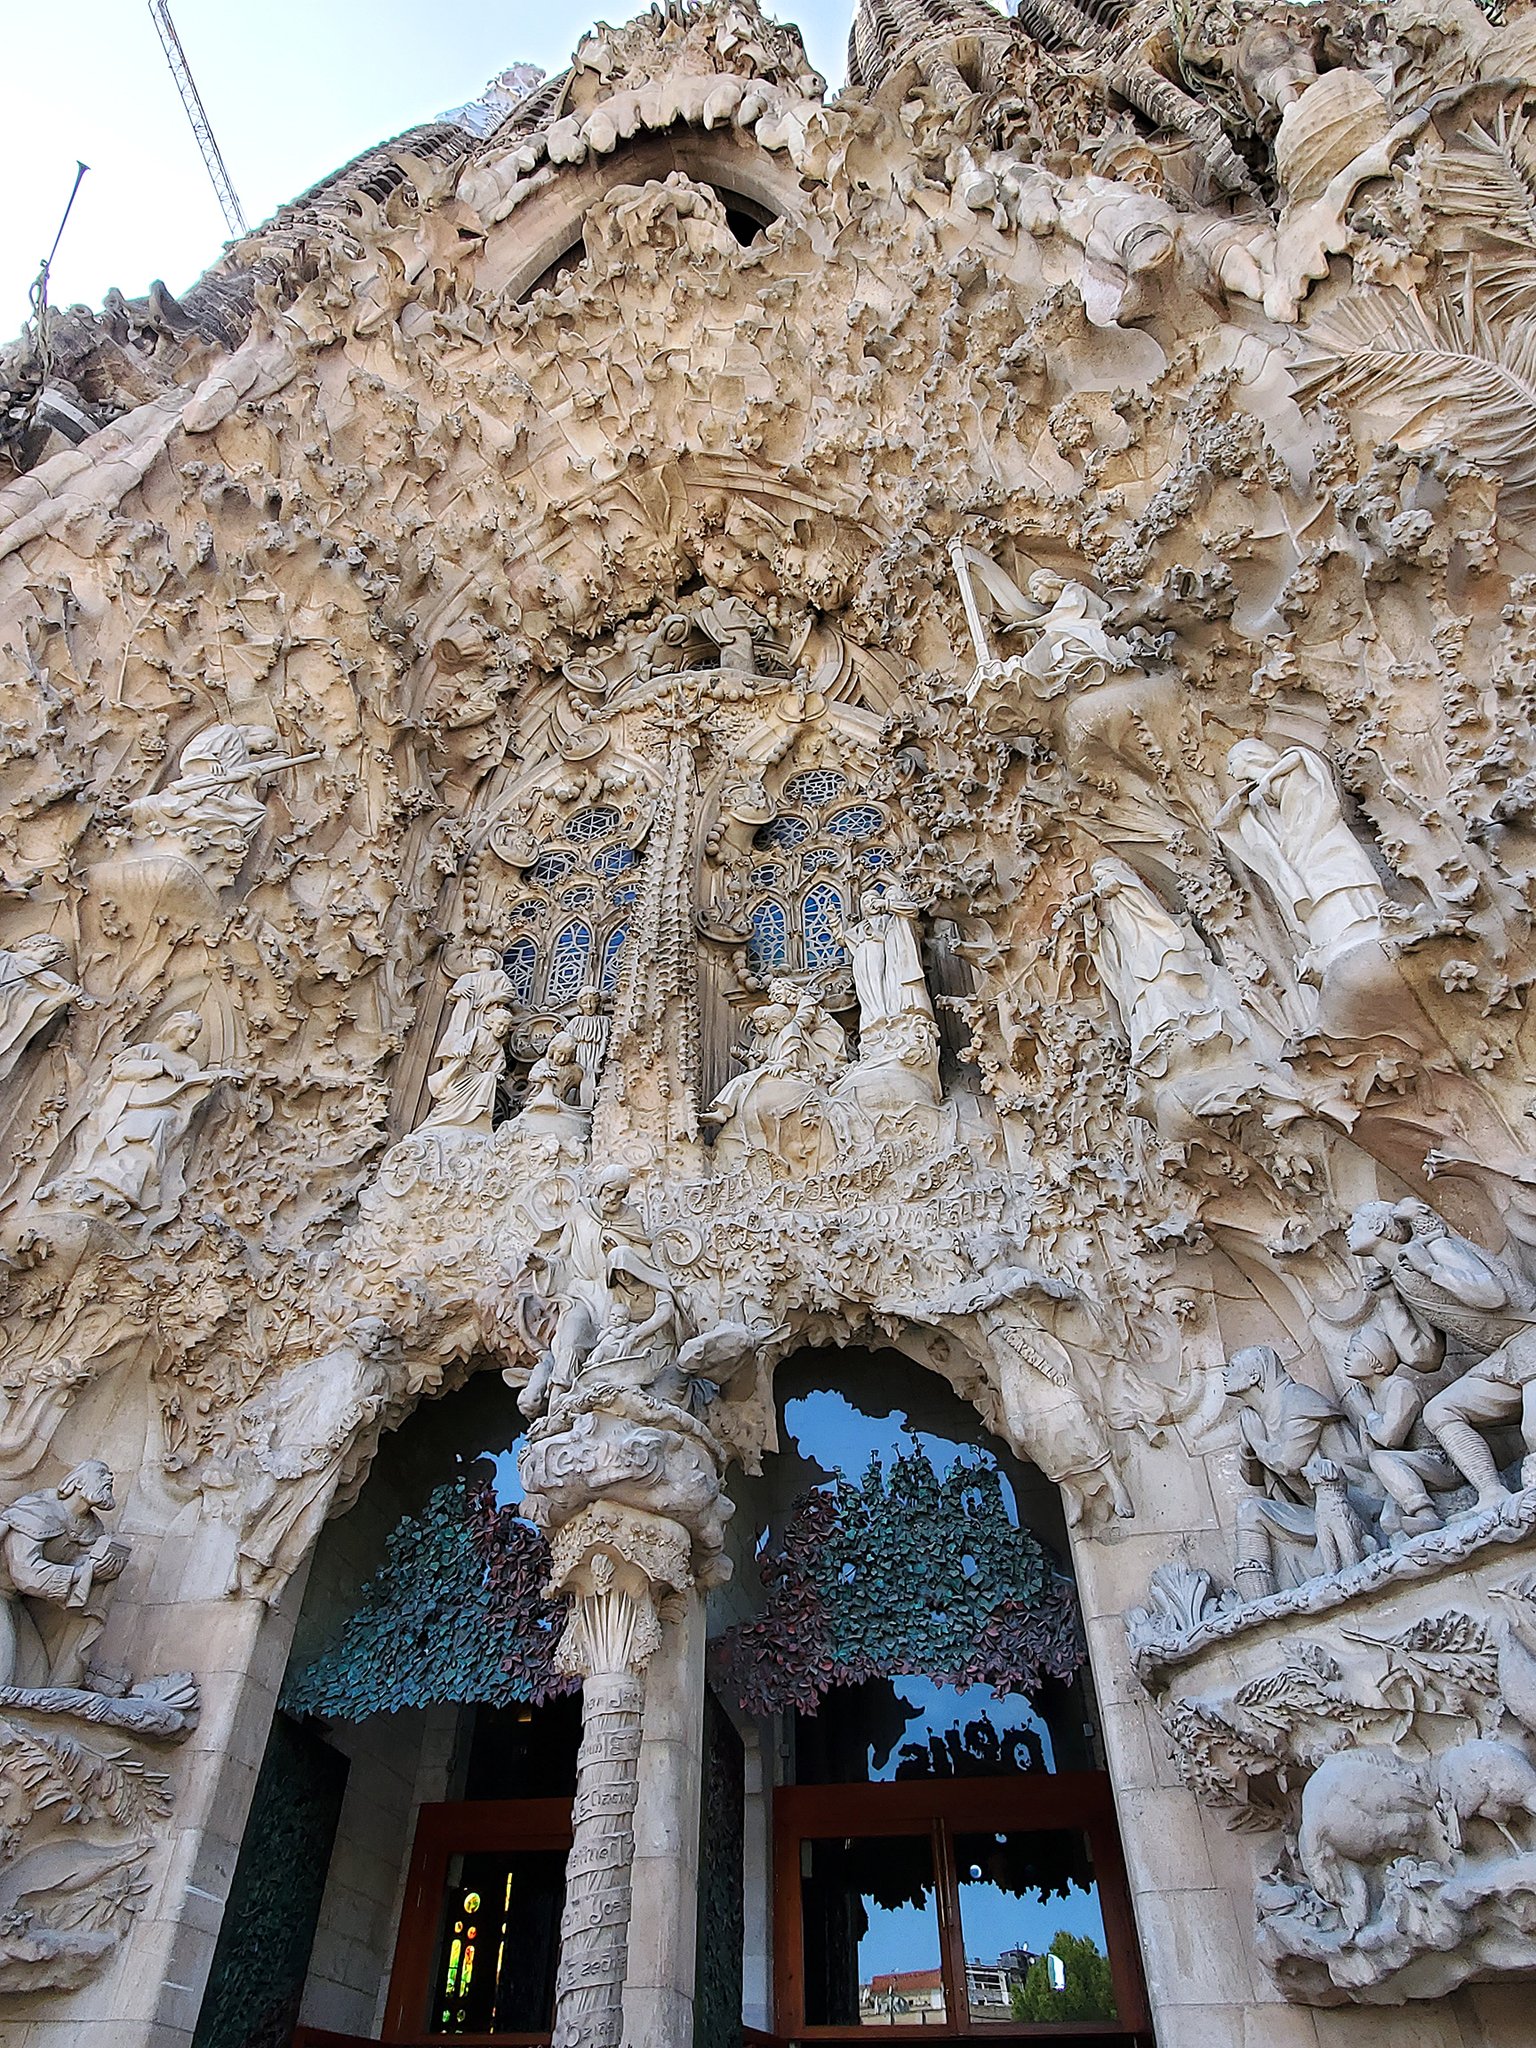 Tamiko ガウディ 存命中につくられた 生誕のファサード の彫刻 細かい サグラダファミリア Sagradafamilia 世界遺産 アントニ ガウディ Gaudi Antonigaudi 情熱の国 旅行 旅 ファインダー越しの私の世界 Barcelona スペイン